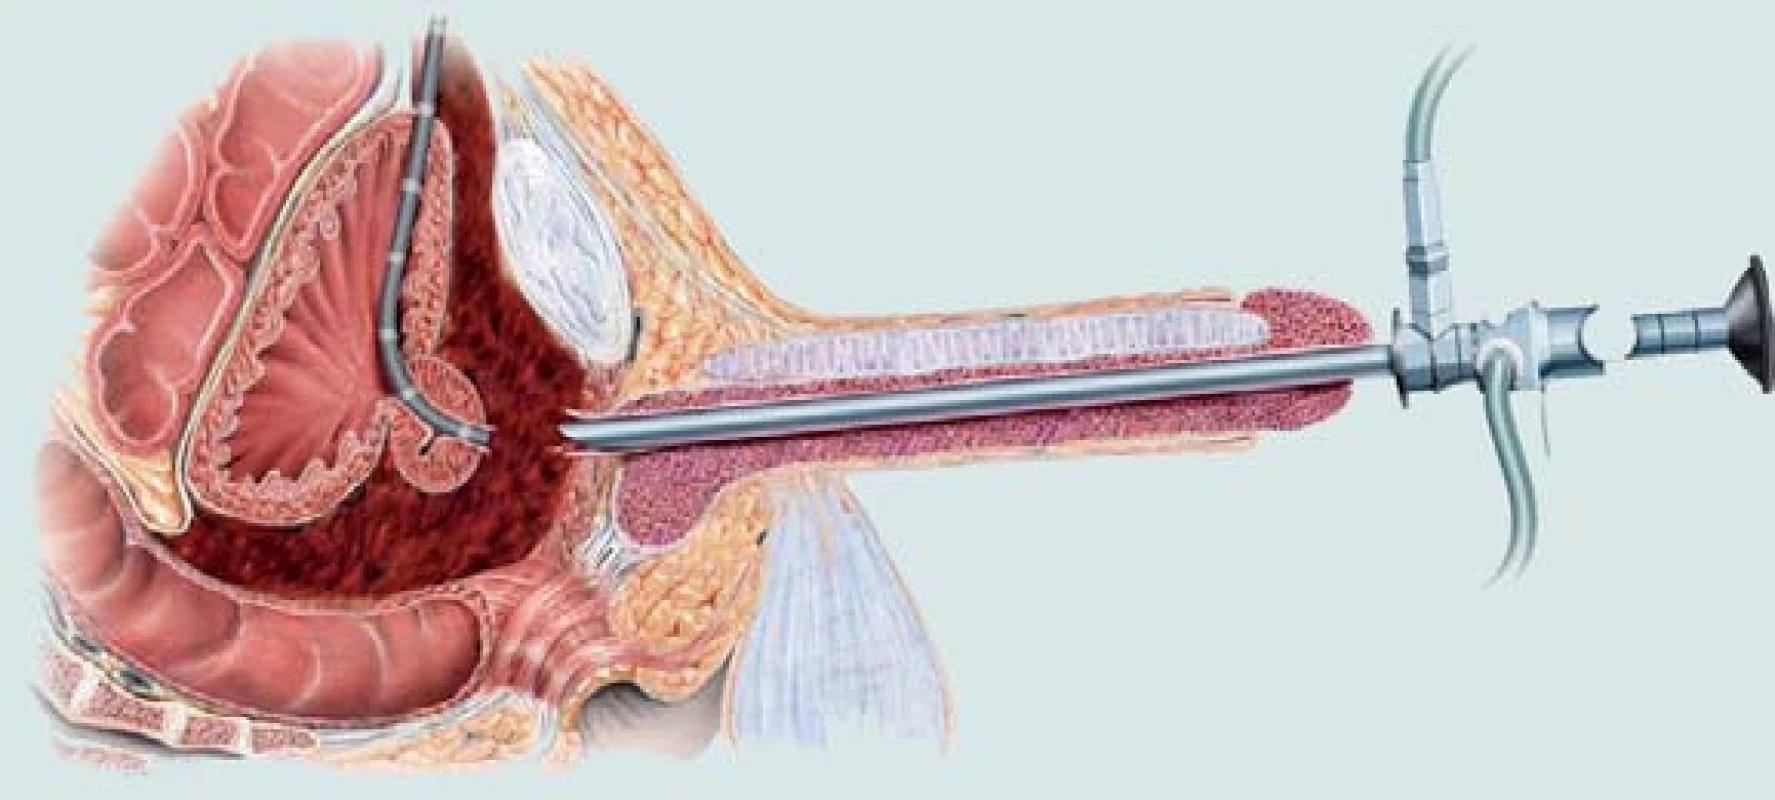 Poranění zadní části močové trubice. Obnovení kontinuity močové trubice pomocí endoskopického přístupu.